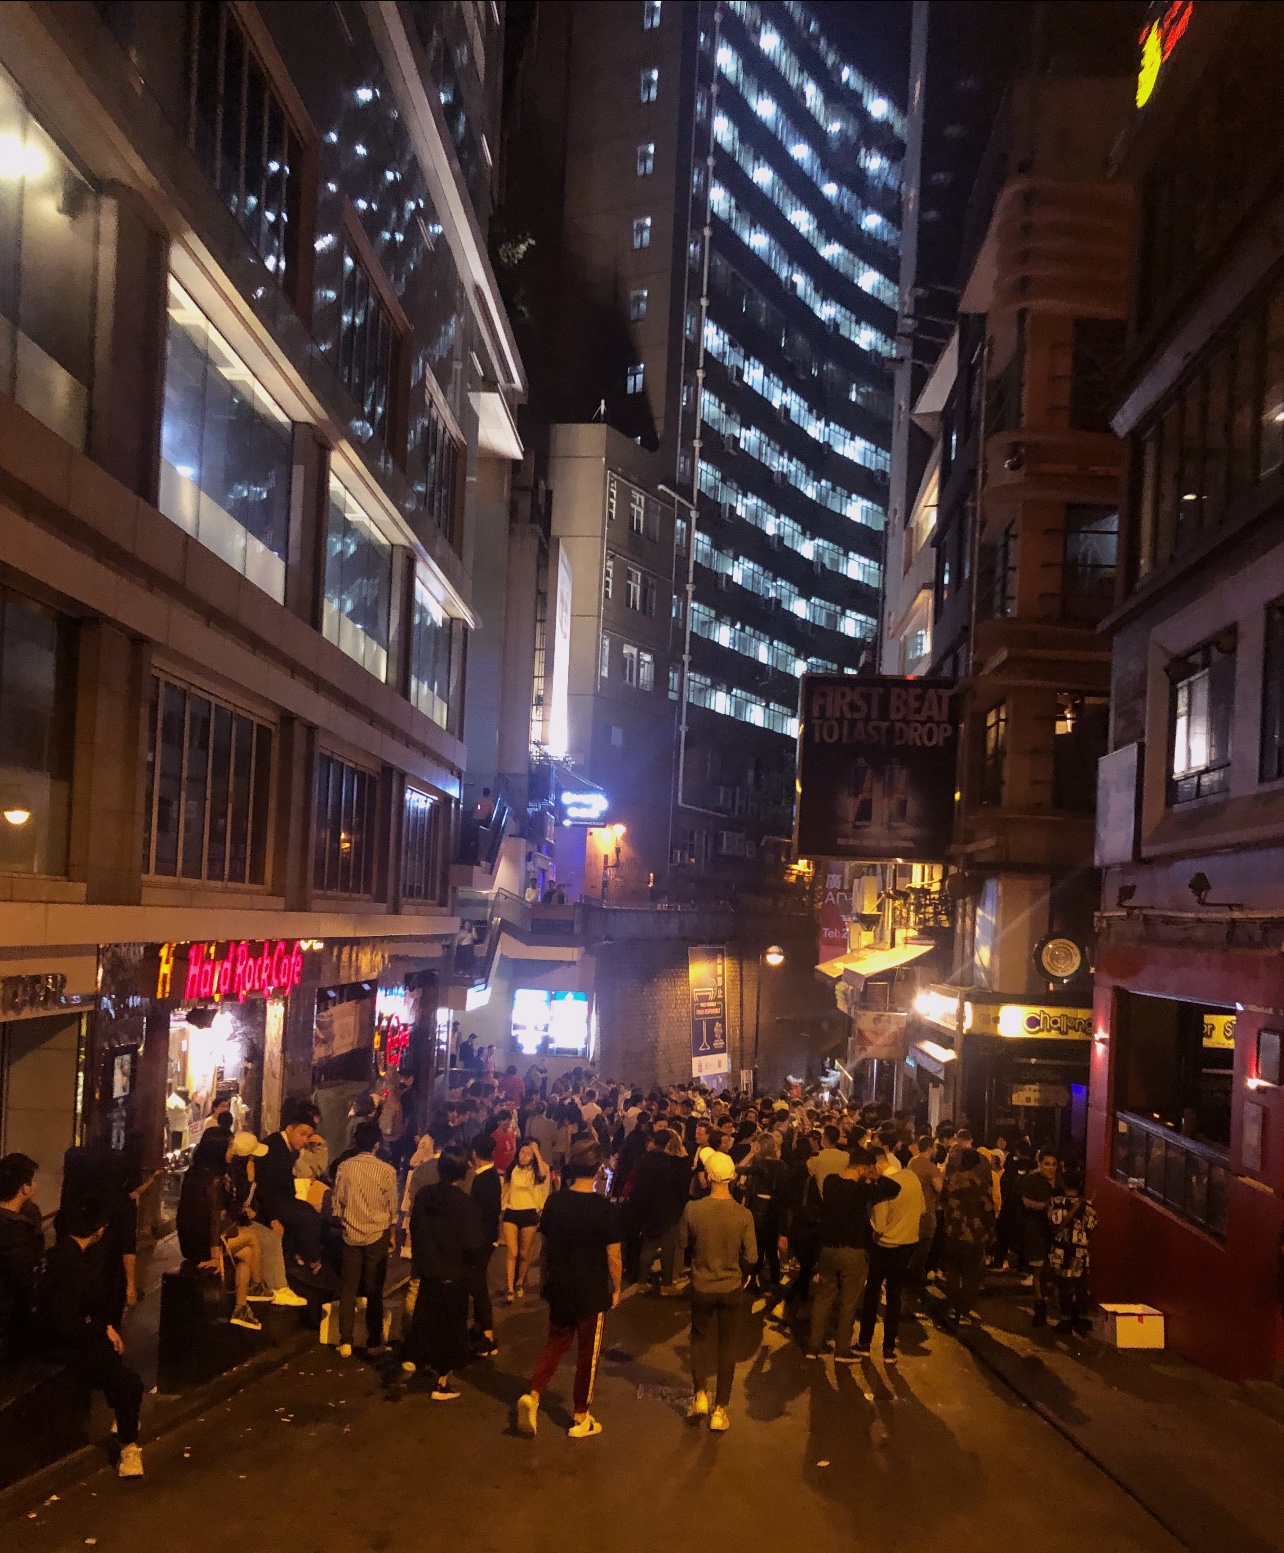 < 관광객들로 붐볐던 홍콩 거리의 모습 - 출처: 통신원 촬영 >